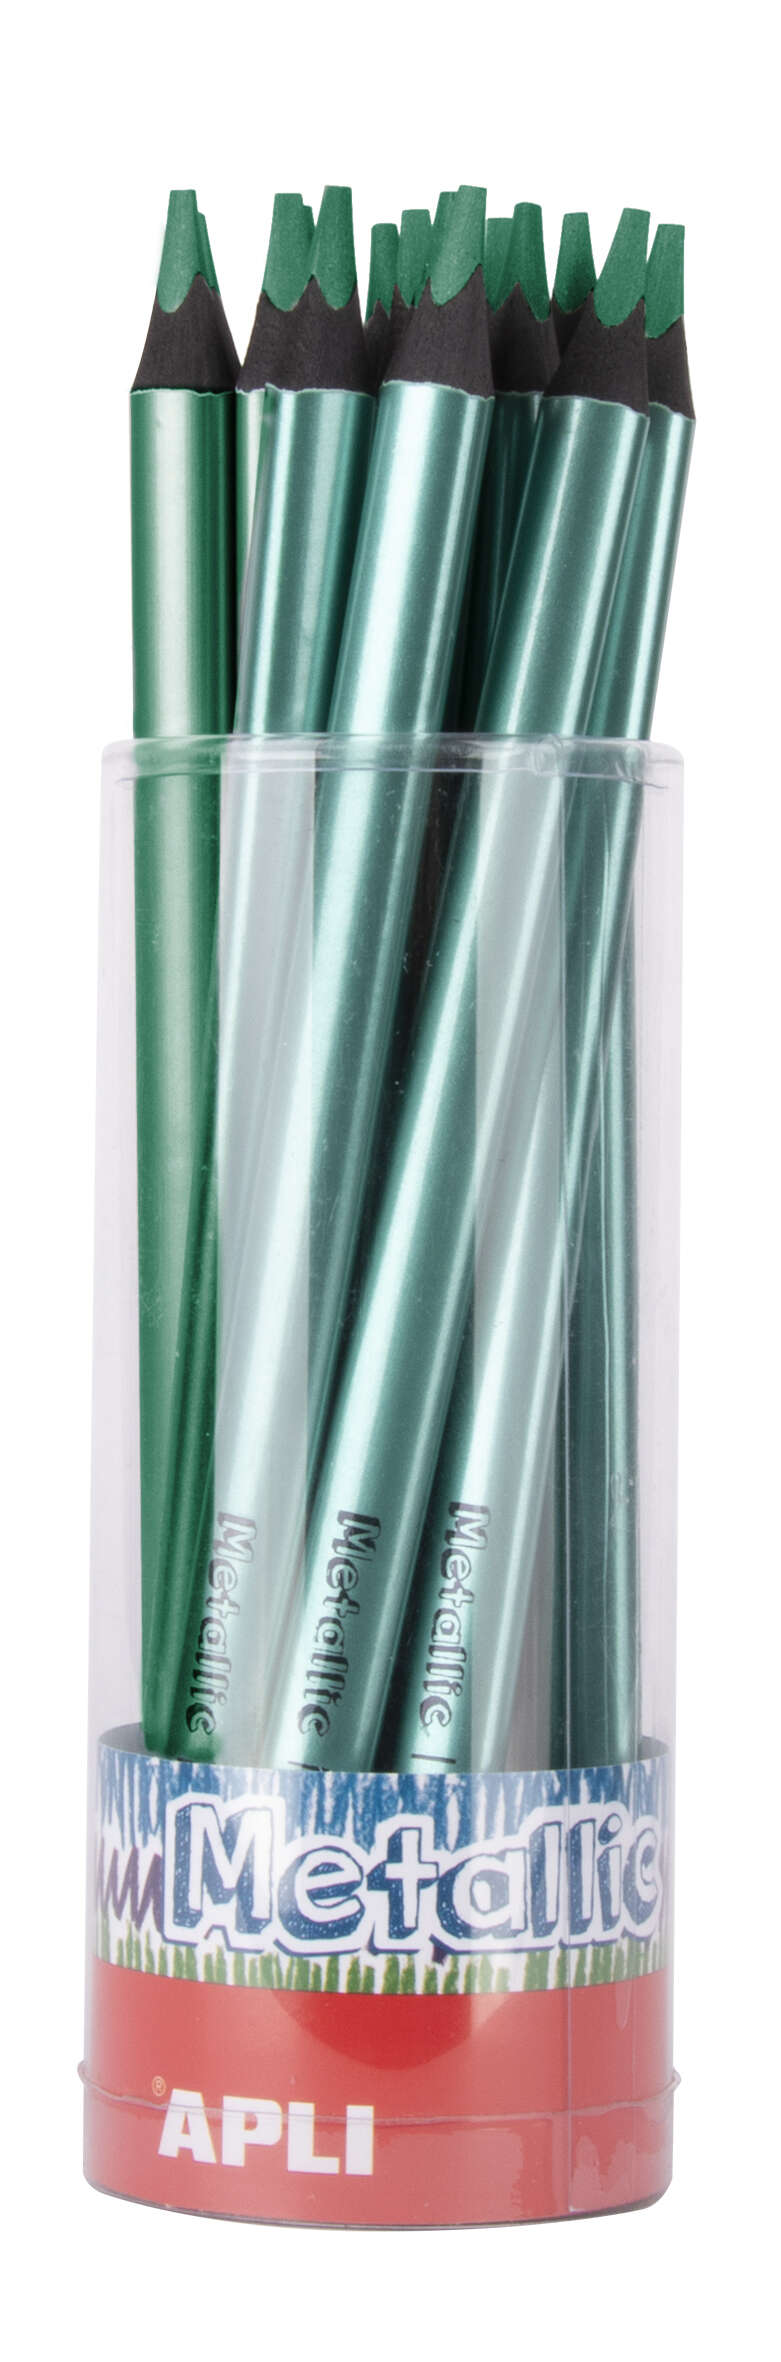 Apli Lapices Jumbo Metallic Verde Metalizado - 5Mm Grueso Triangular - Pack De 18 - Mejora La Sujecion